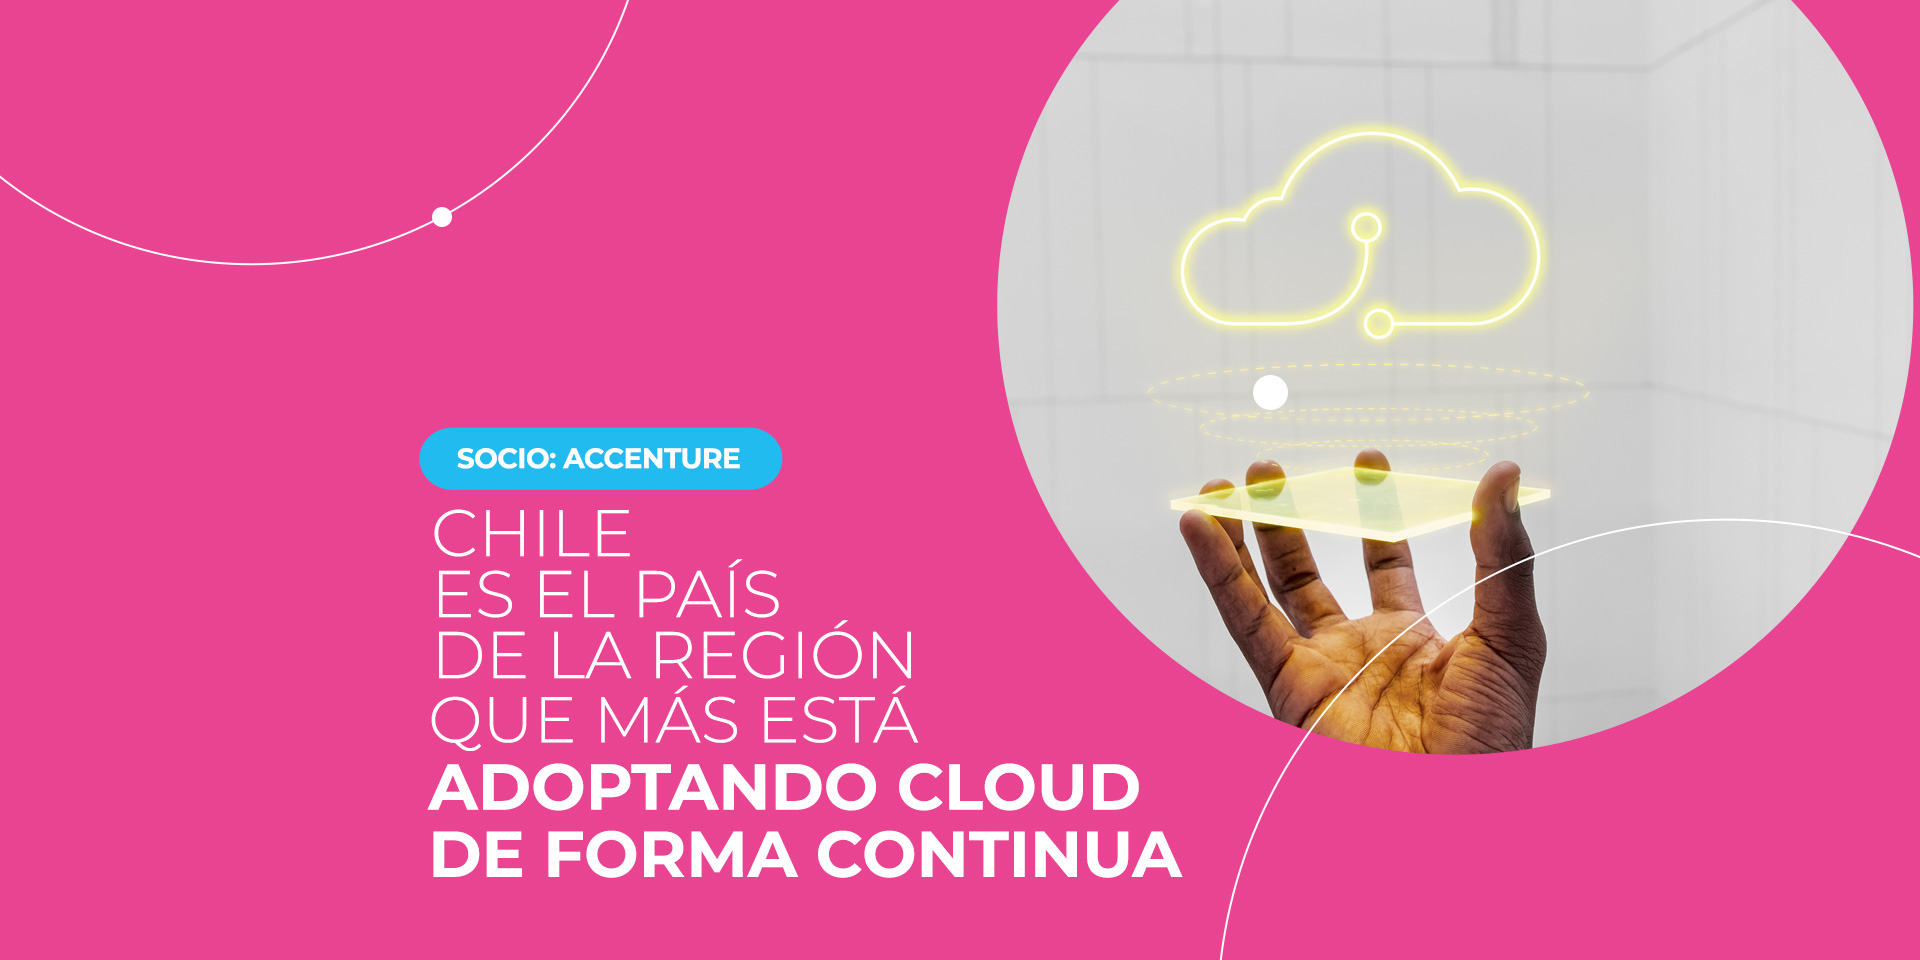 Accenture: Chile es el país de la región que más está adoptando cloud de forma continua